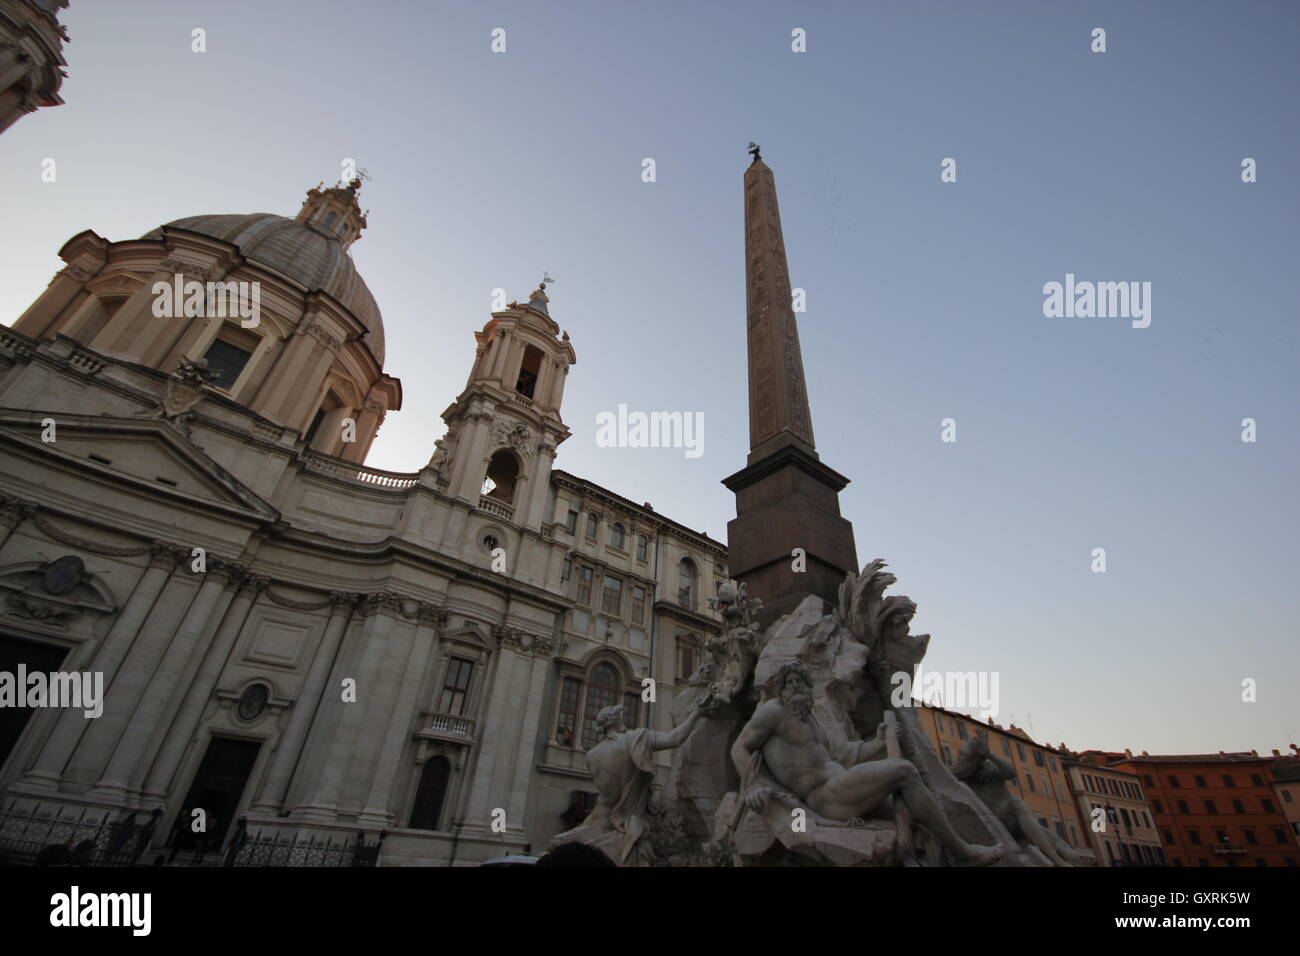 L'obélisque de la Fontana dei Quattro Fiumi avec l'église de Sant'Agnese in Agone, Piazza Navona, Rome, Italie Banque D'Images